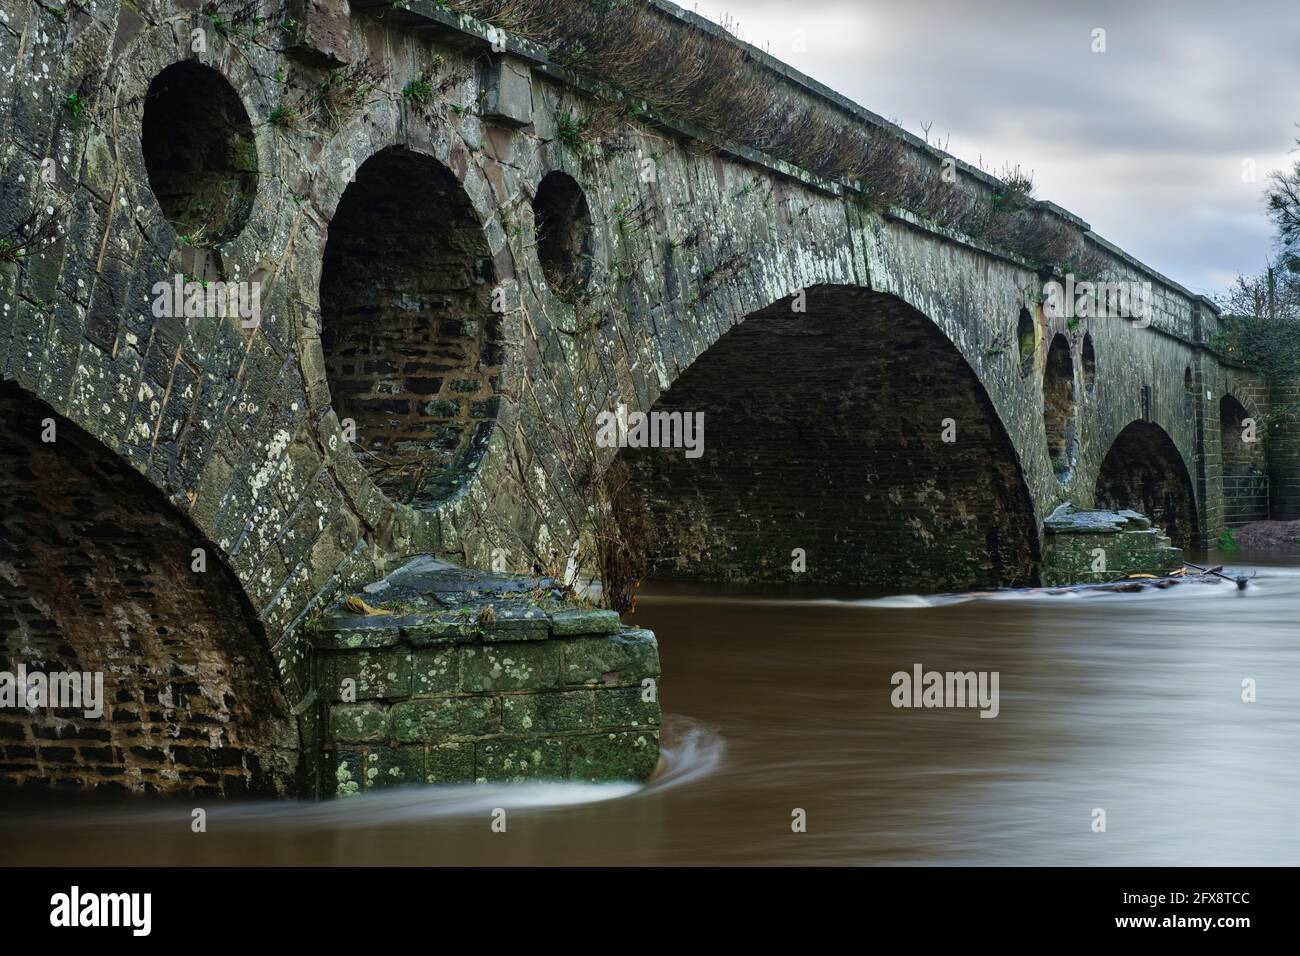 Pont de pantalon y goitre sur la rivière Usk à Llanvihangel Gobion, près d'Abergavenny. Banque D'Images